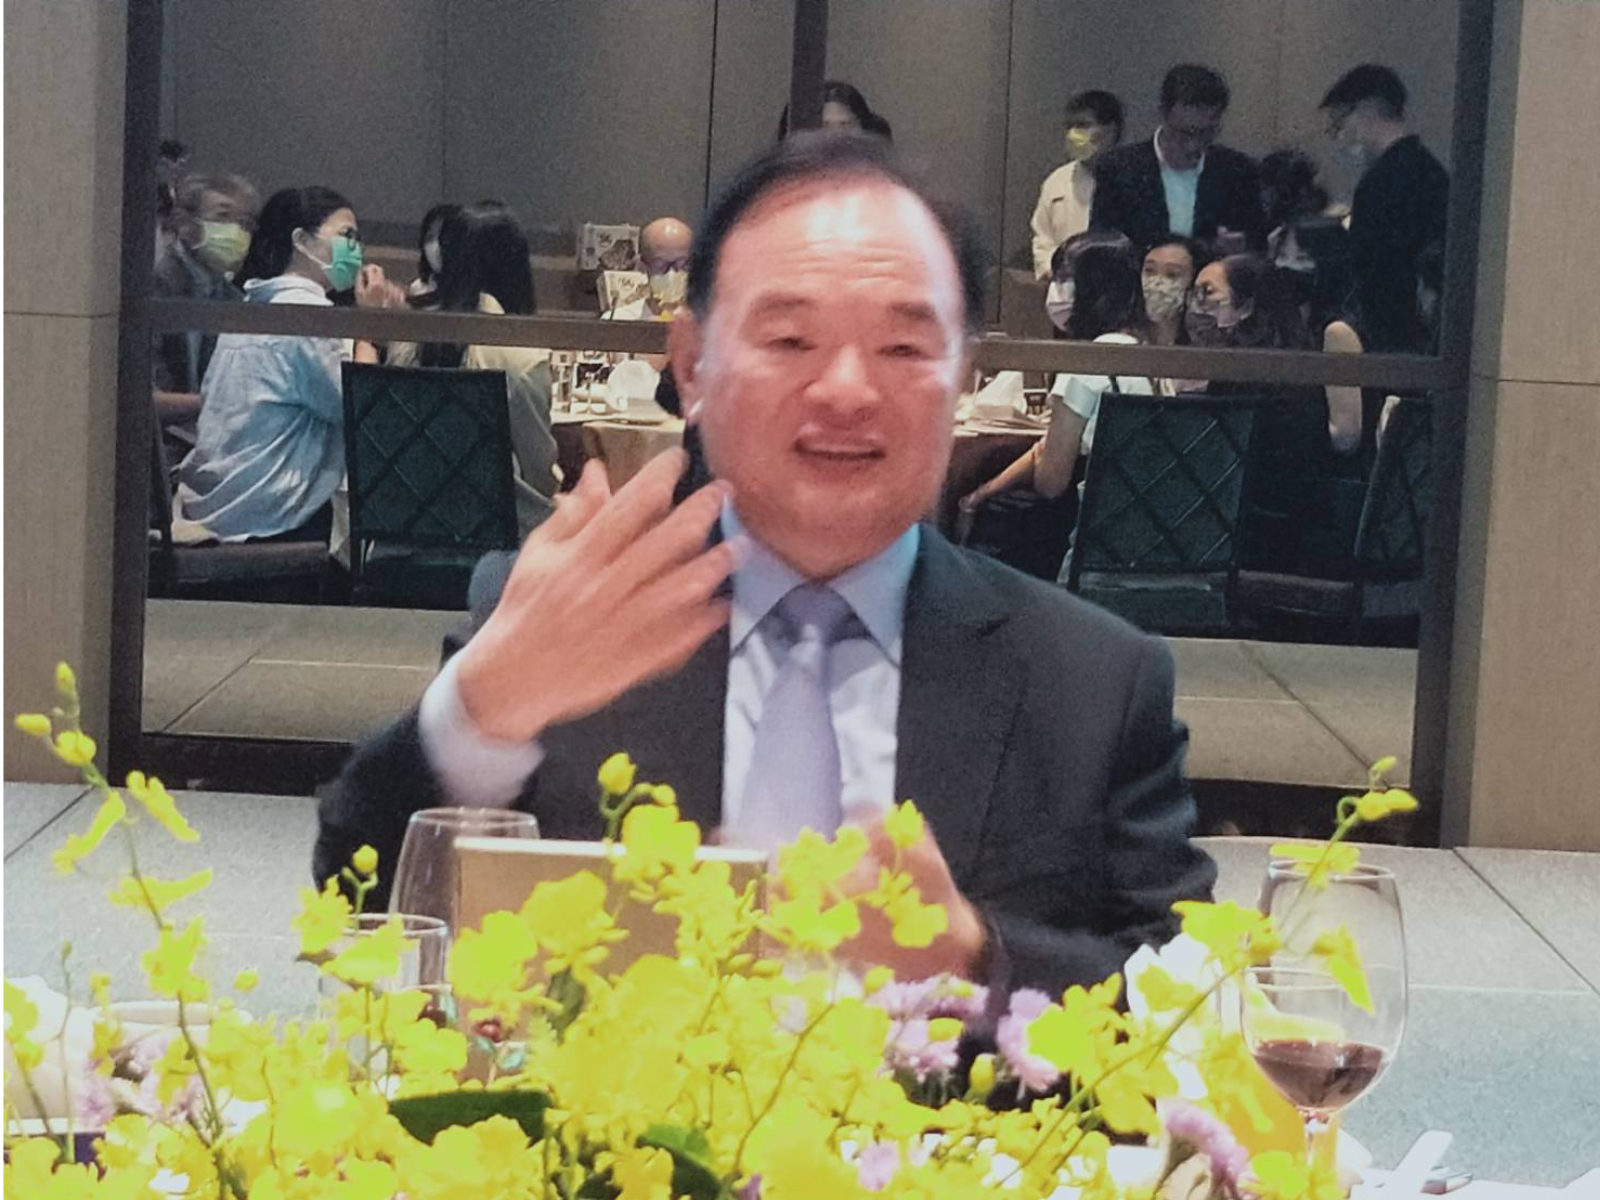 全聯董事長林敏雄談大潤發未來發展  並宣布展開4心策略 實現美好生活